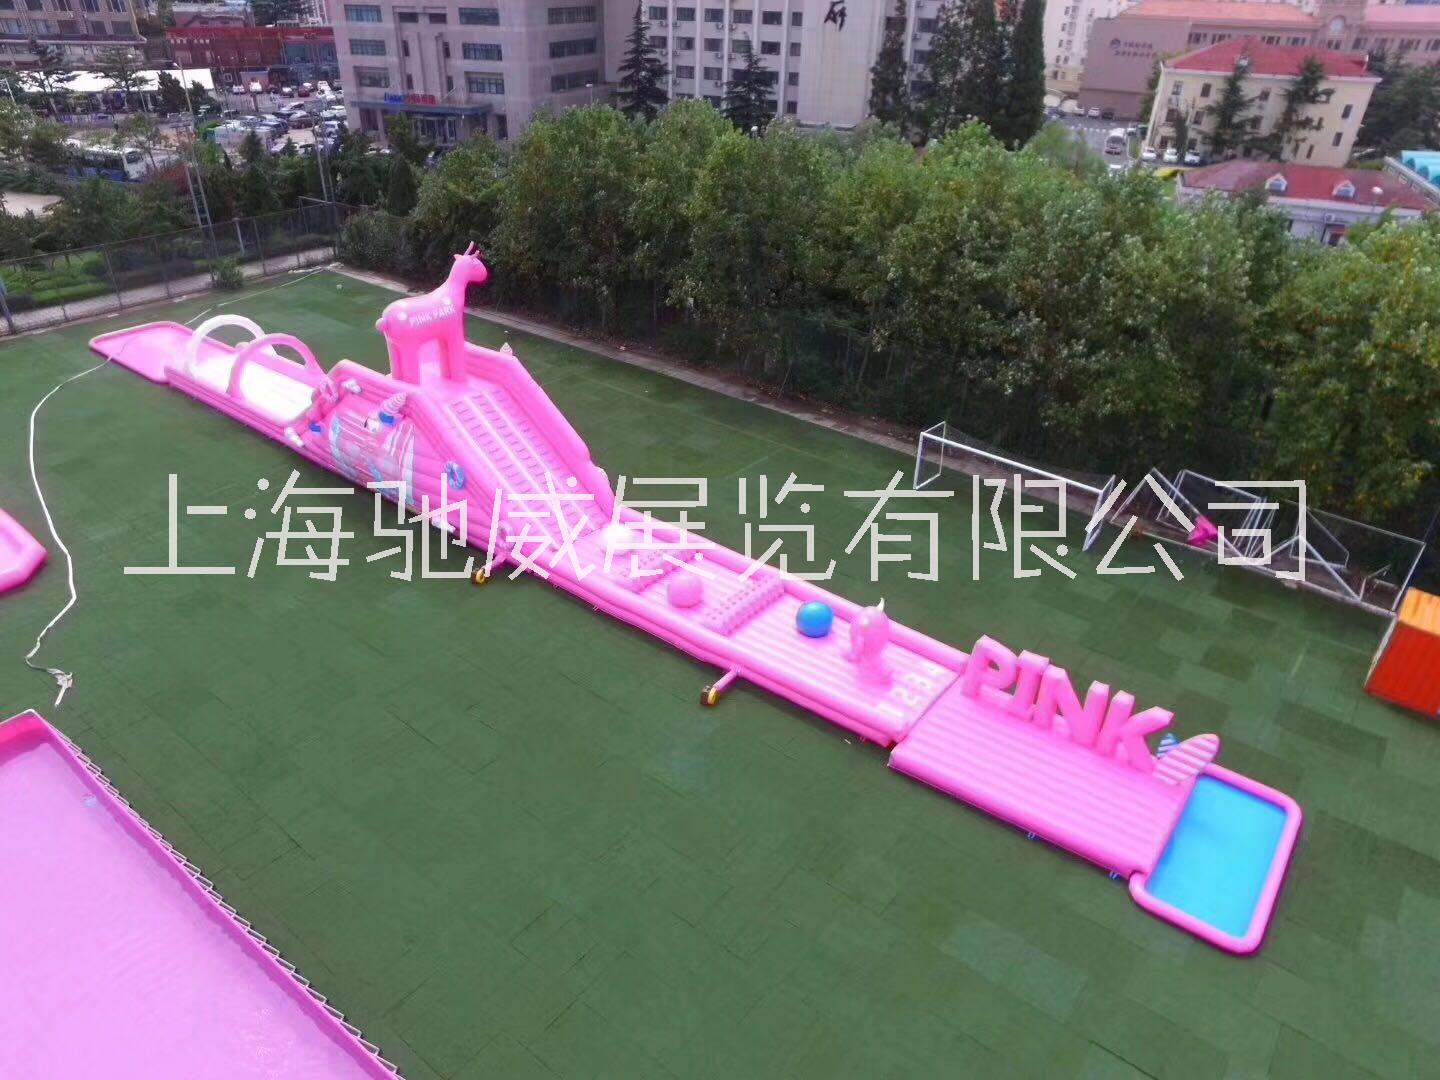 新款粉红滑到出租出售粉红滑梯租售60米粉红滑道租赁 粉色大滑梯出租网红粉色滑梯租赁